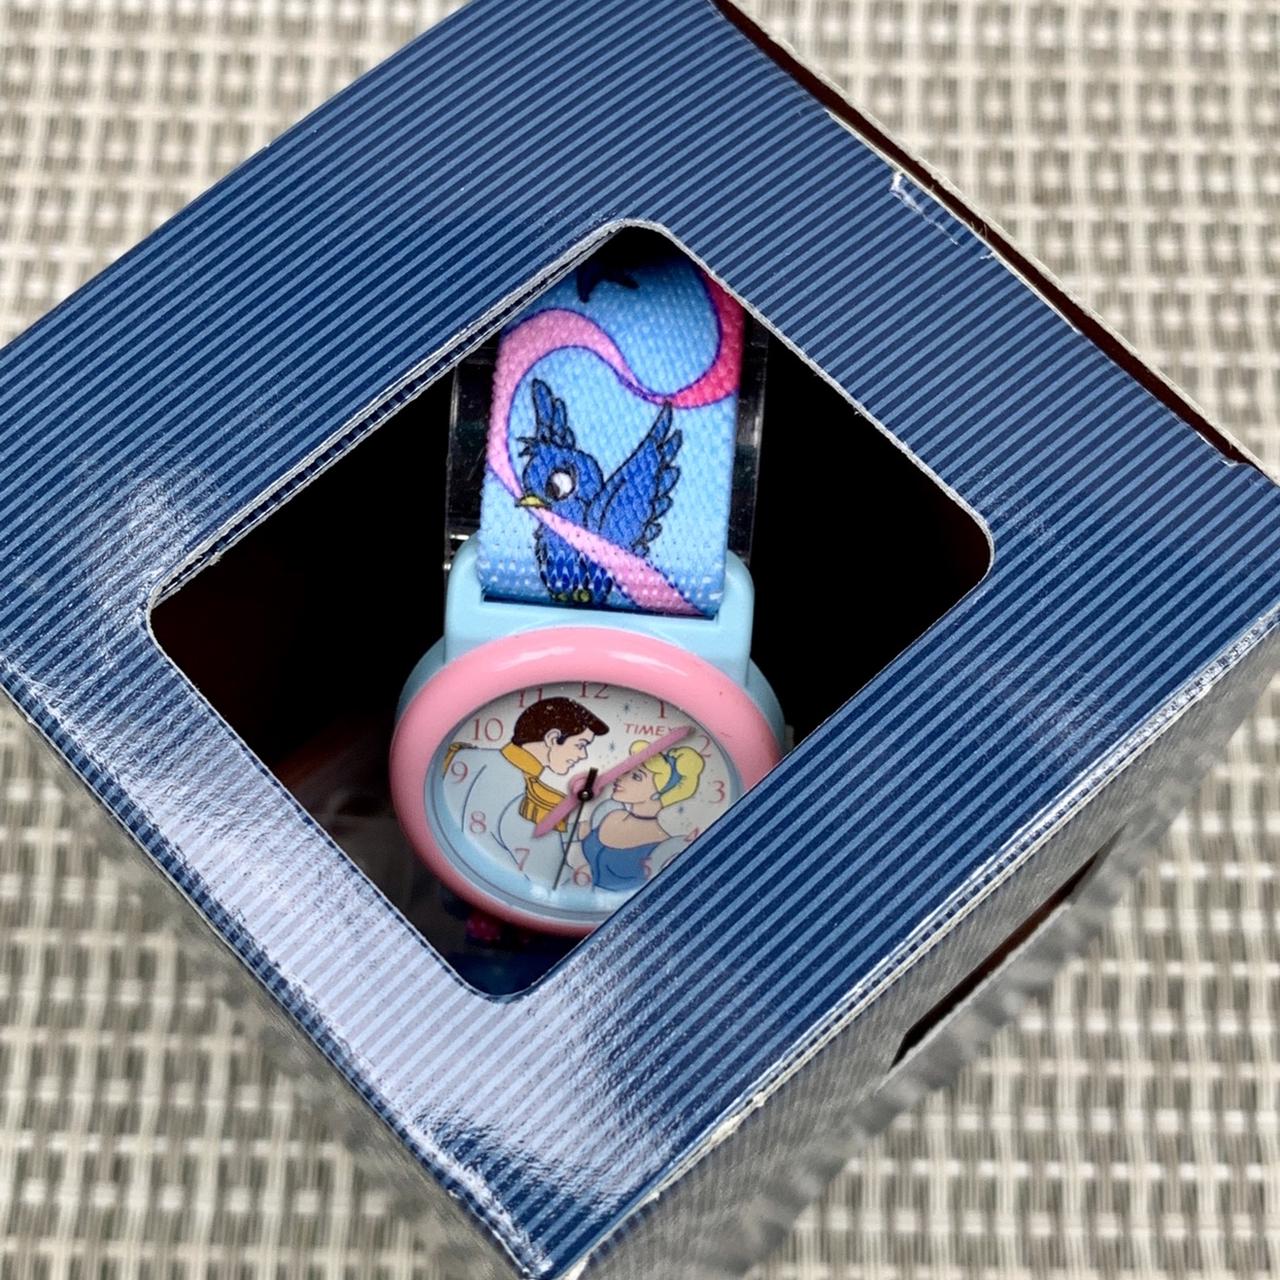 Timex, Accessories, Vintage Alice In Wonderland Times Watch